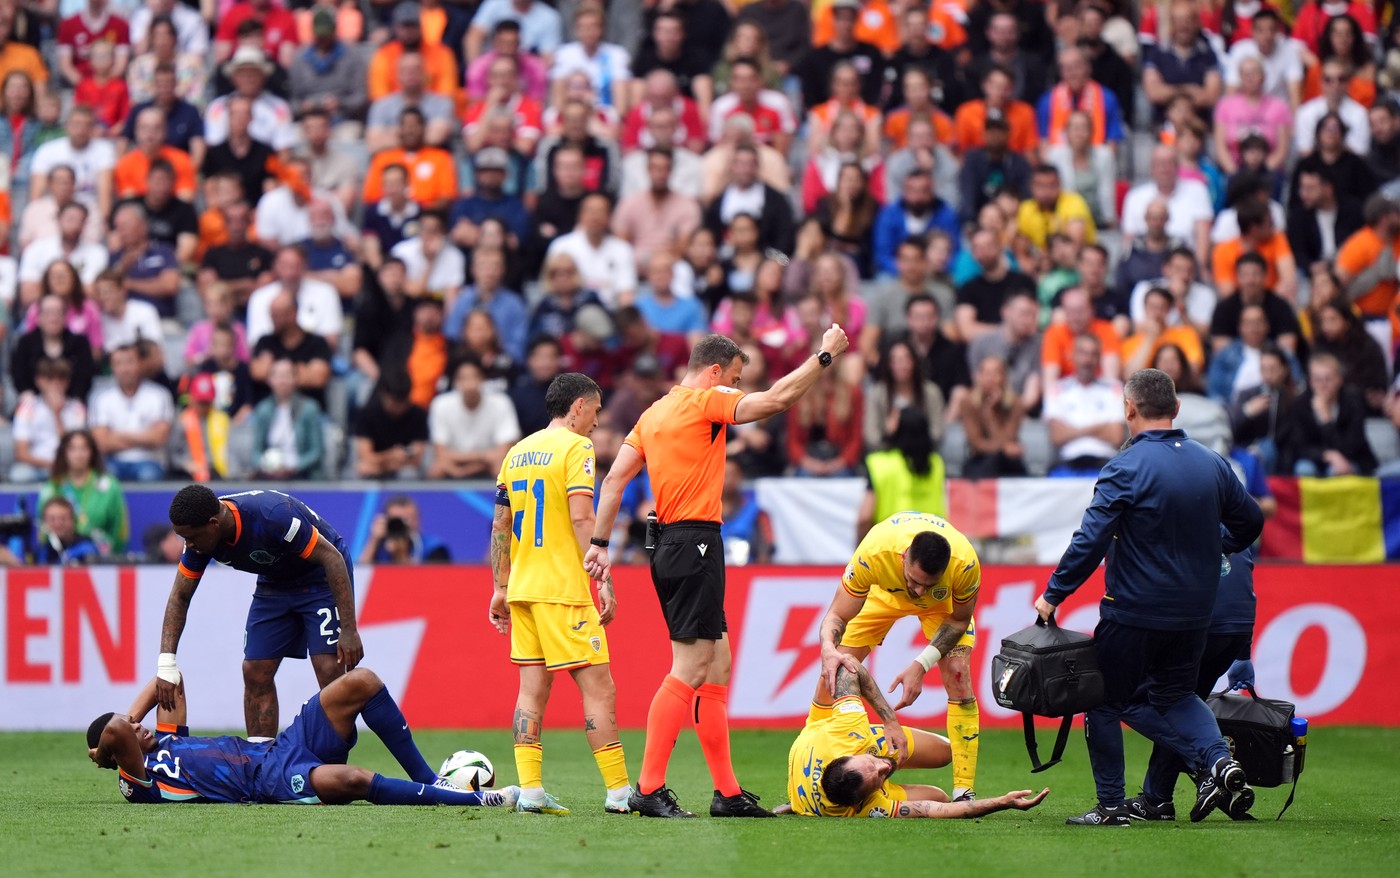 ”Minunat de urmărit”. Fotbalistul care a impresionat în prima repriză din România - Olanda